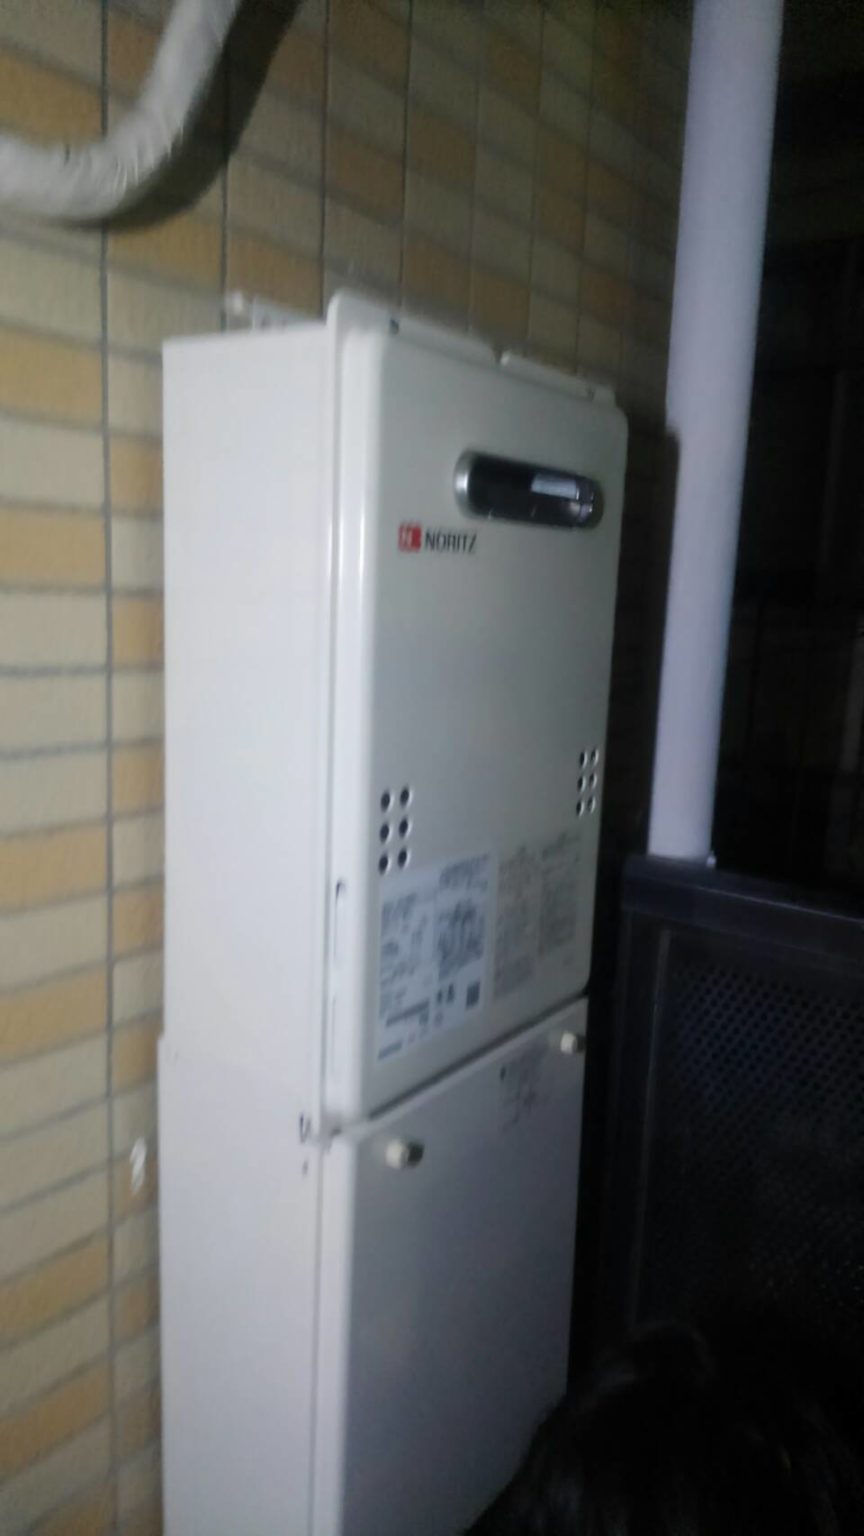 「リモコンの電源が入らない」の記事一覧 ｜ 給湯器を名古屋や愛知で安く交換するなら、イーパートナーで！